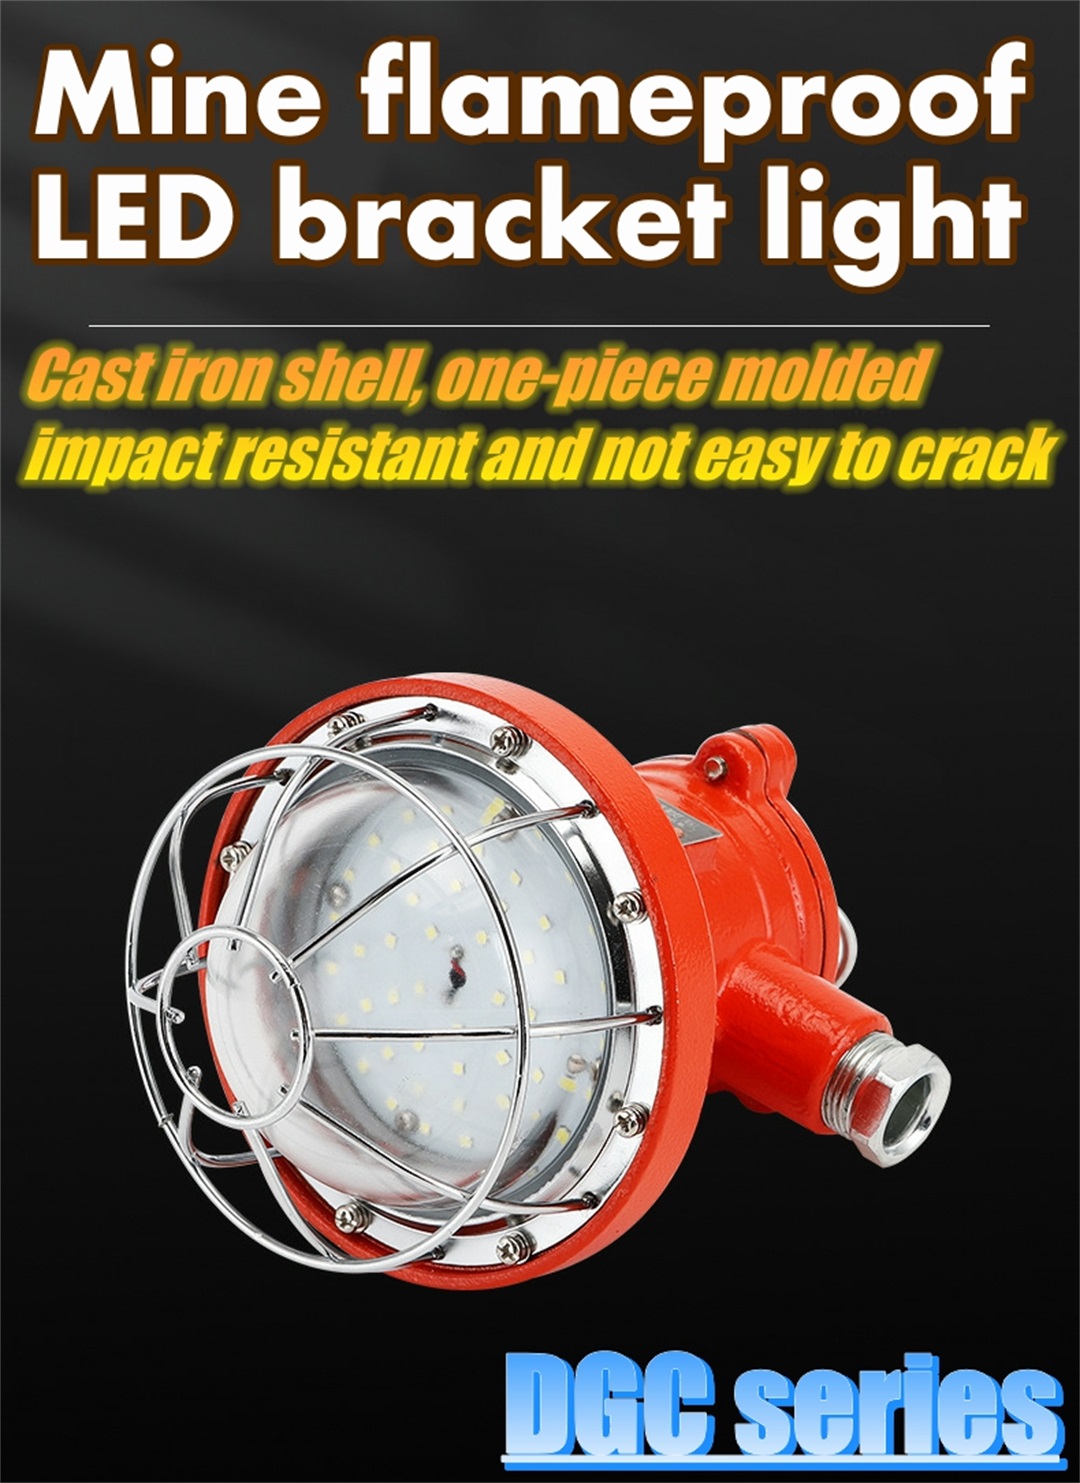 Mine flameproof LED bracket light